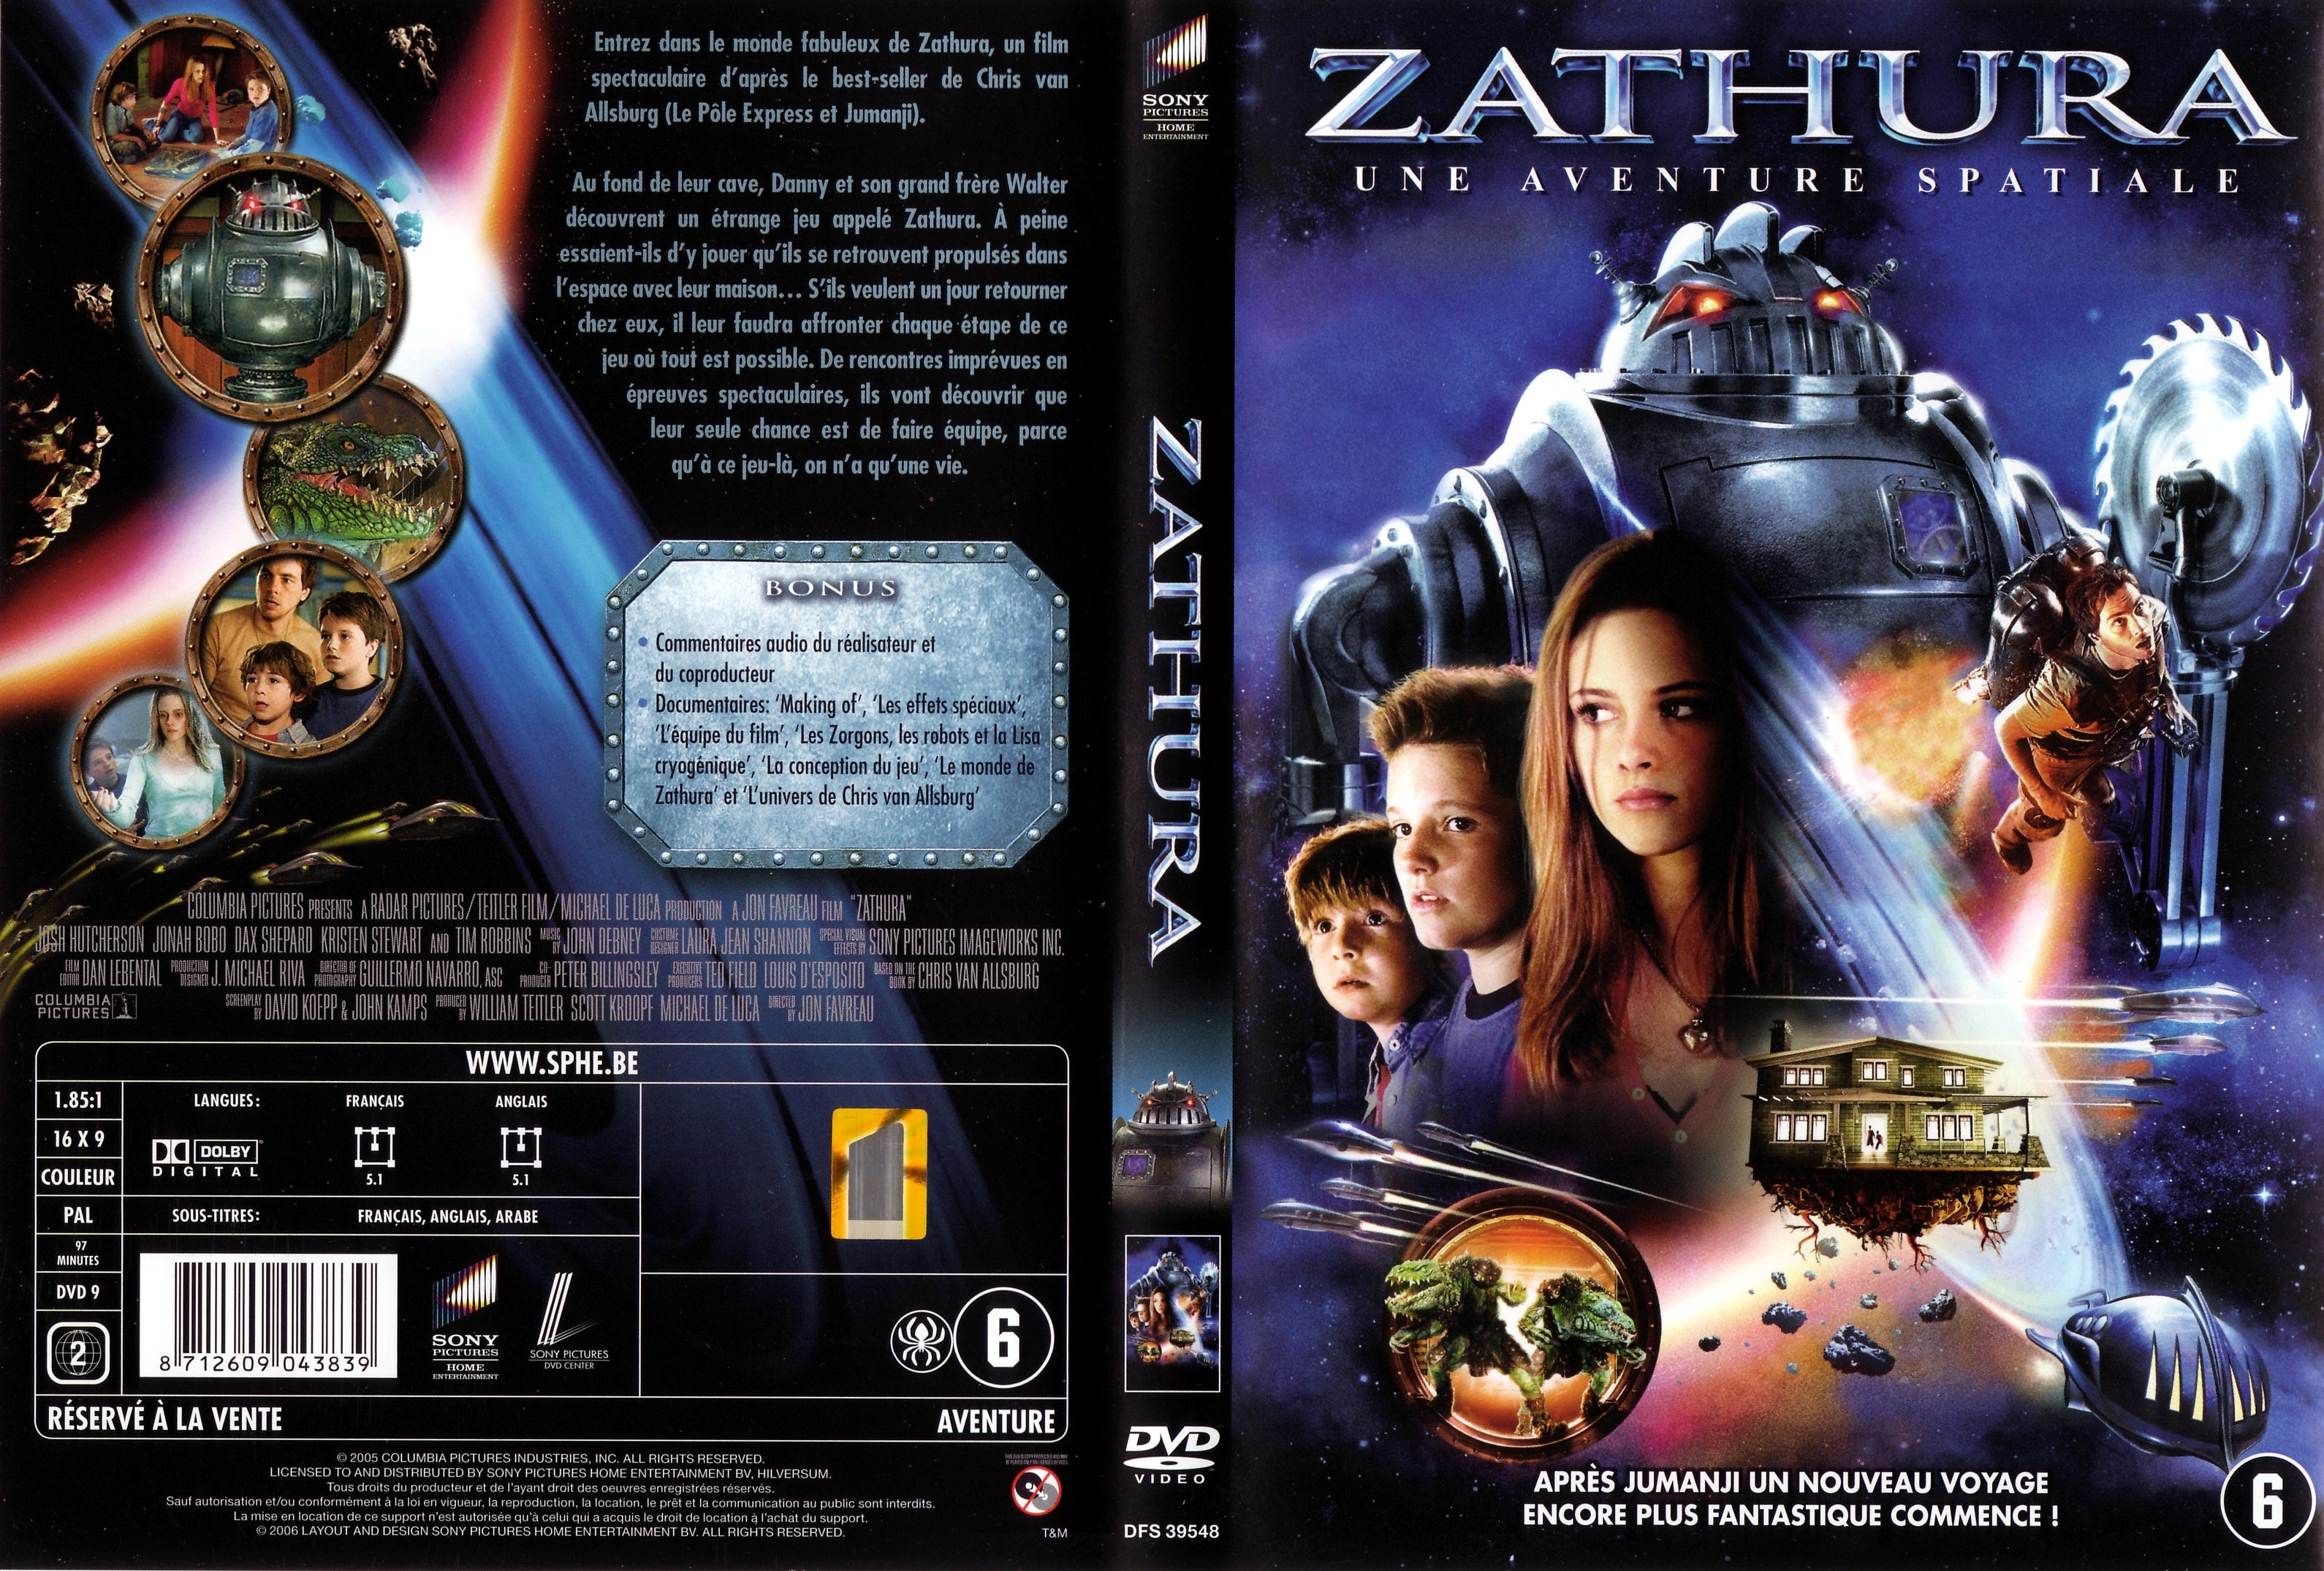 Jaquette DVD Zathura v2